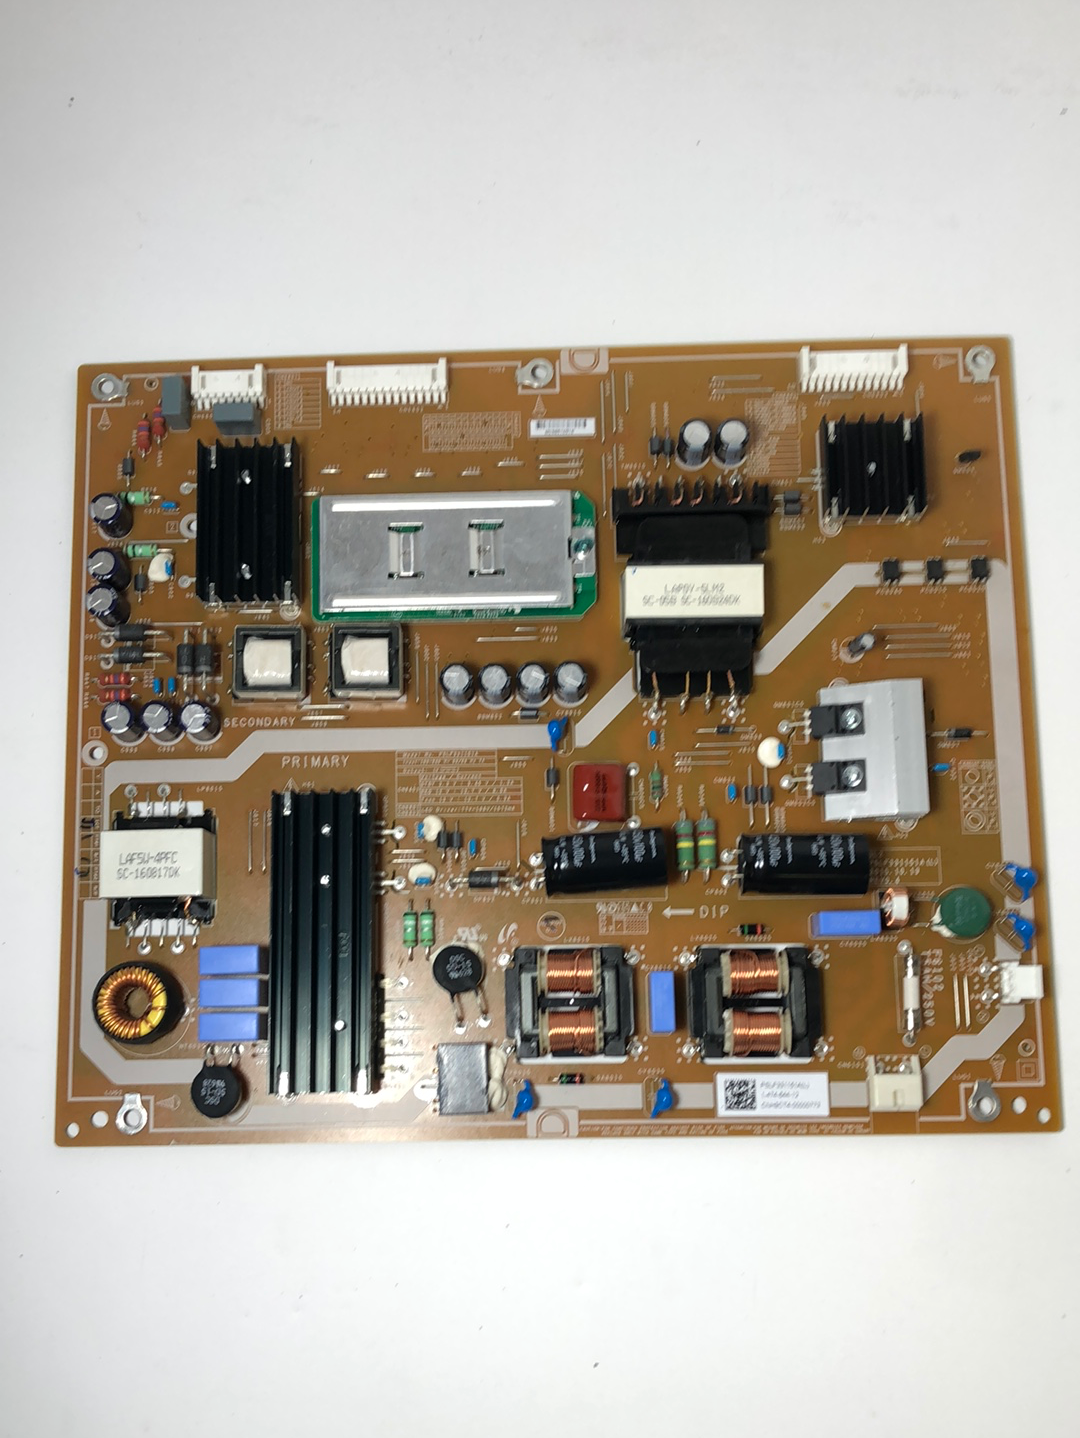 Sony 1-474-644-11 Main Power Supply Board